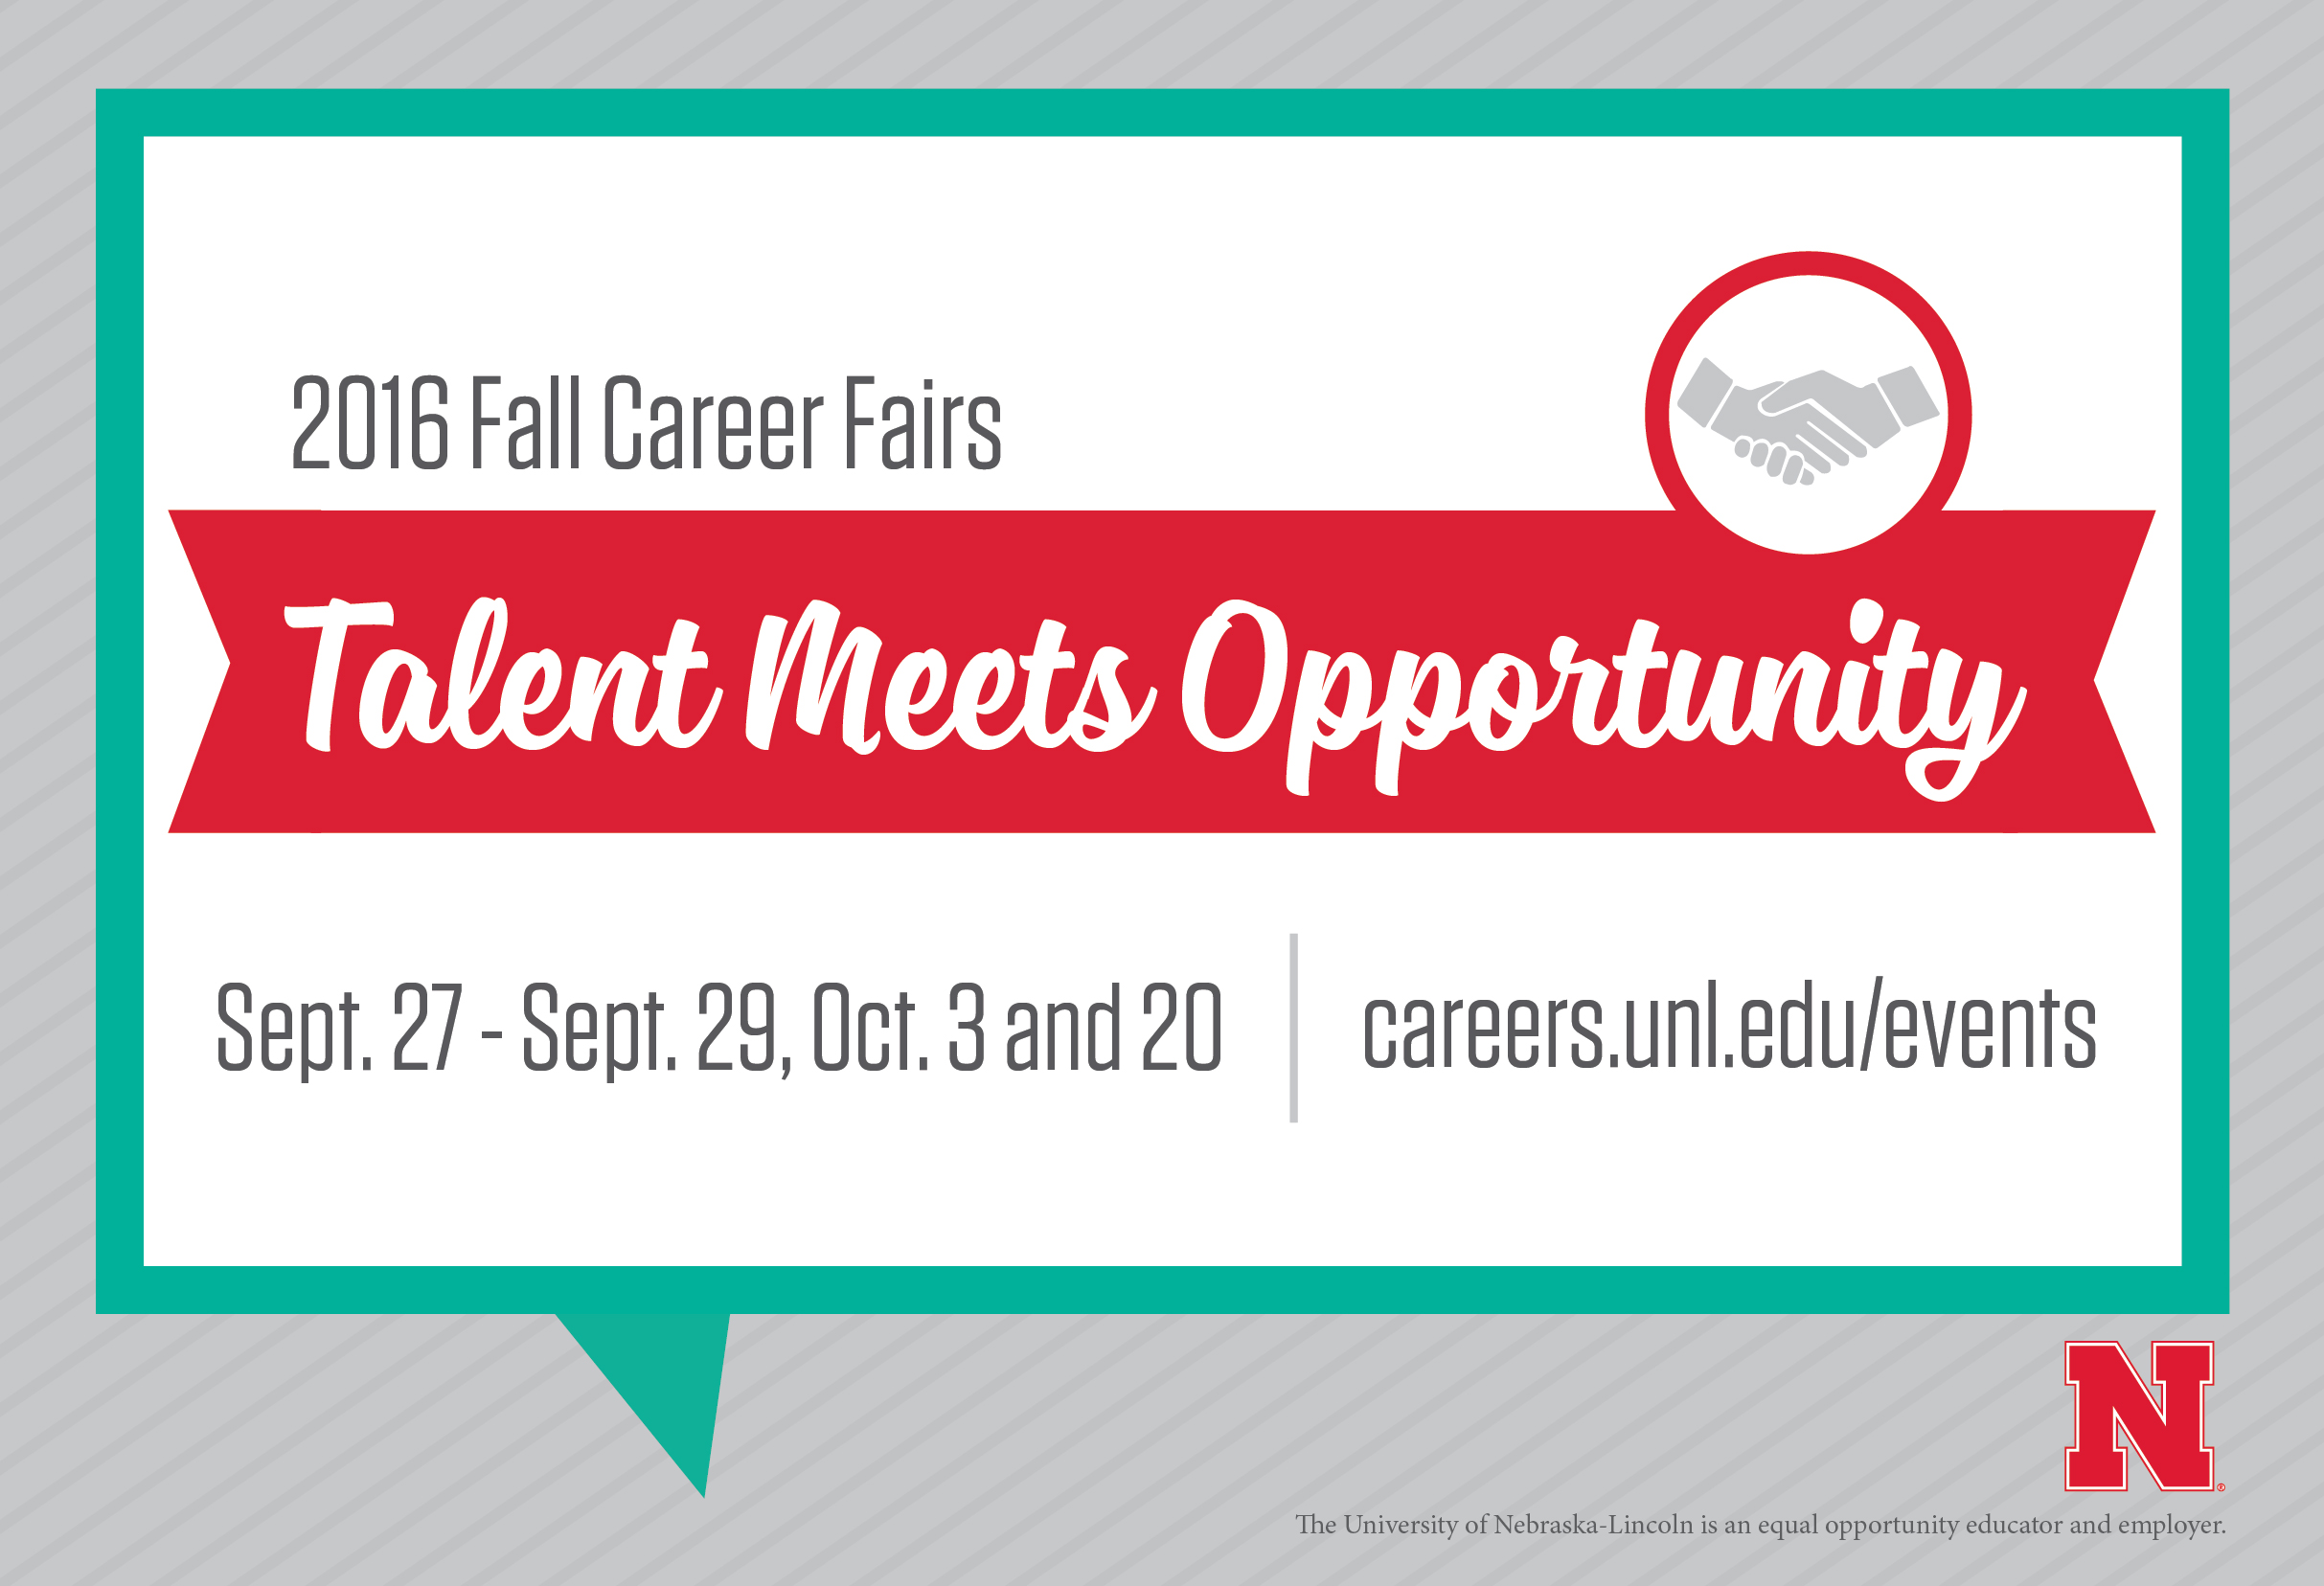 The Fall Career Fair will be Thursday, Sept. 29.